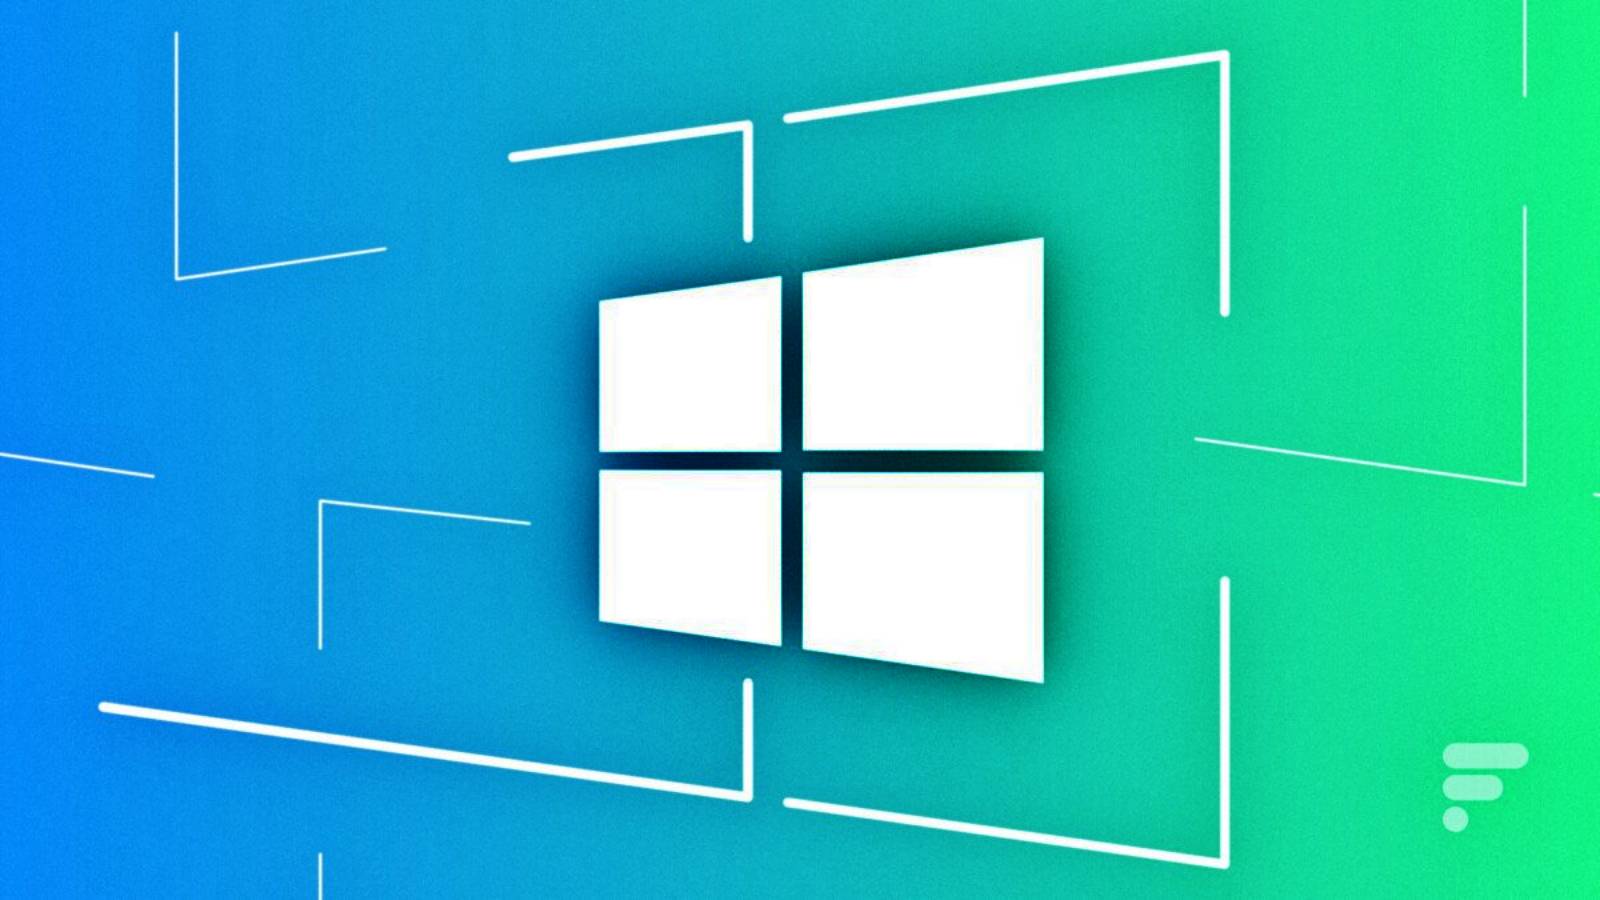 Windows 12 aproape lansare microsoft